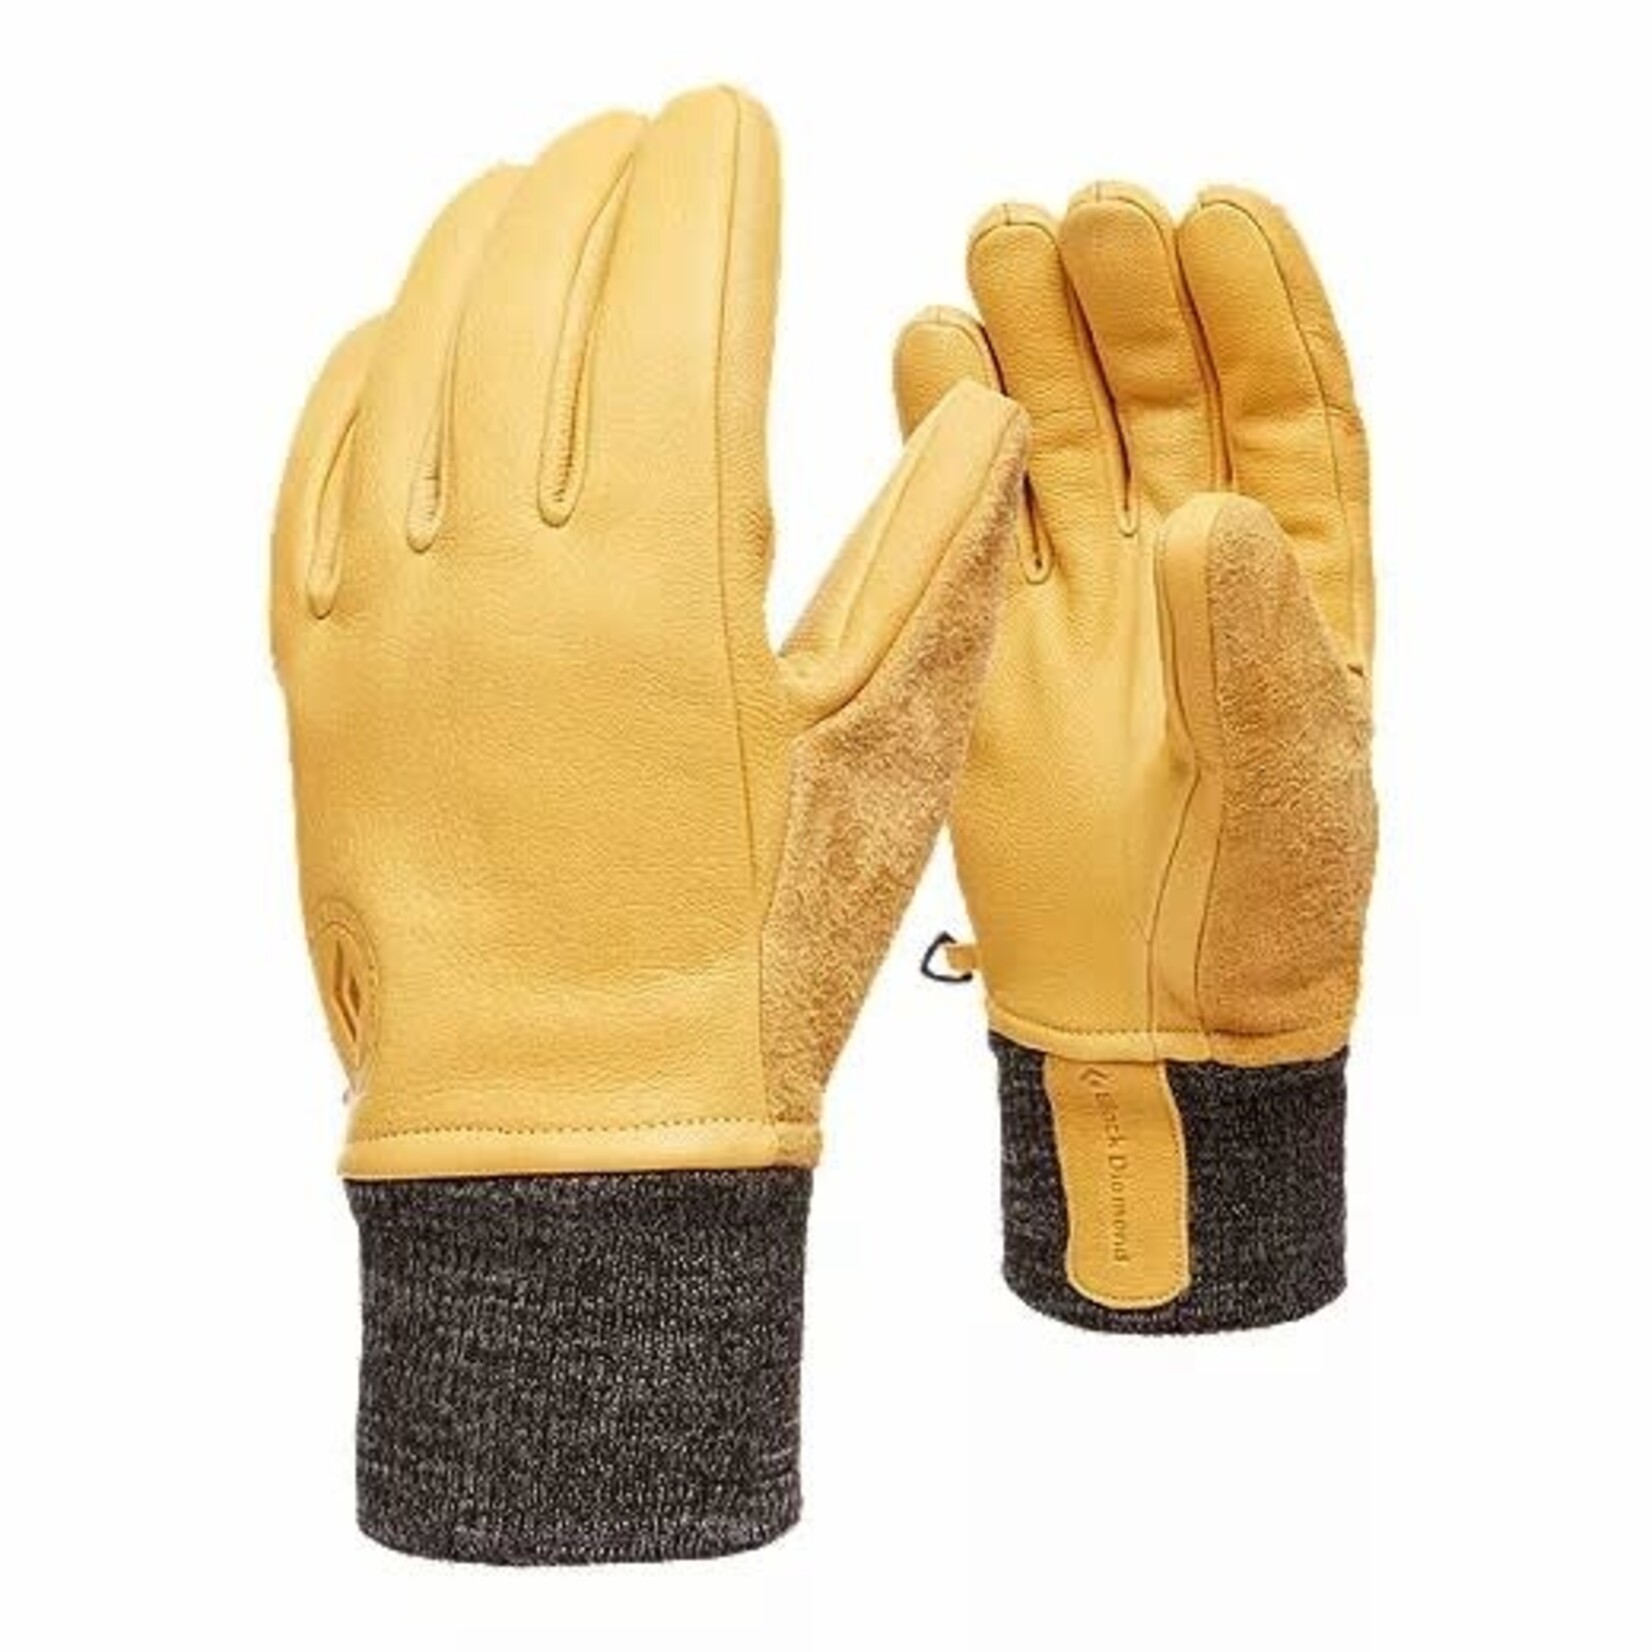 Black Diamond Dirt Bag Gloves (gants)